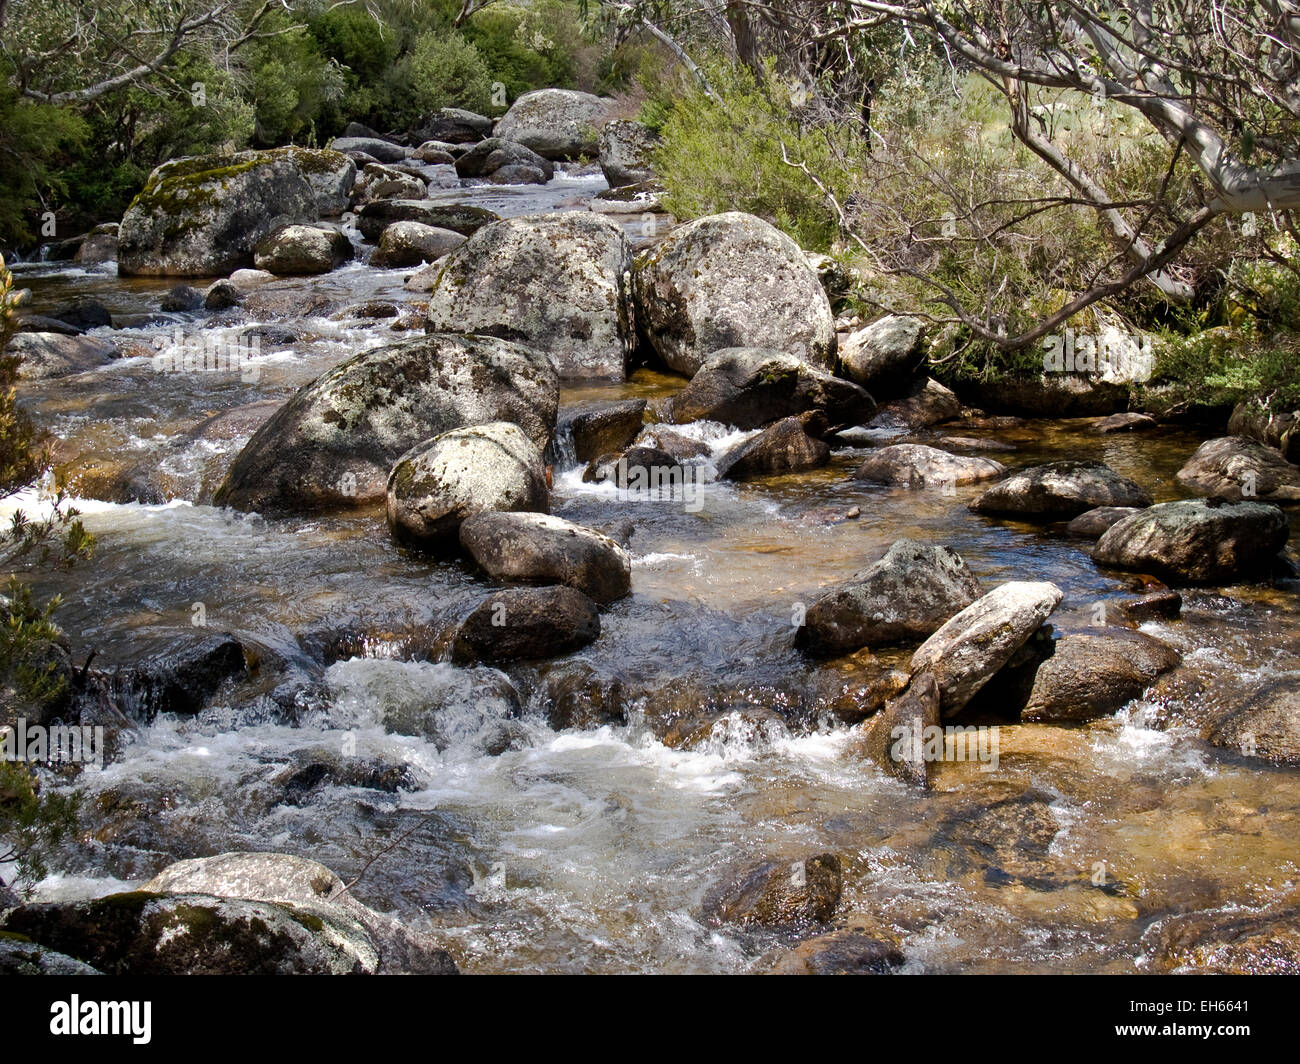 Australia: Thredbo River above Thredbo, Snowy Mountains, NSW Stock Photo